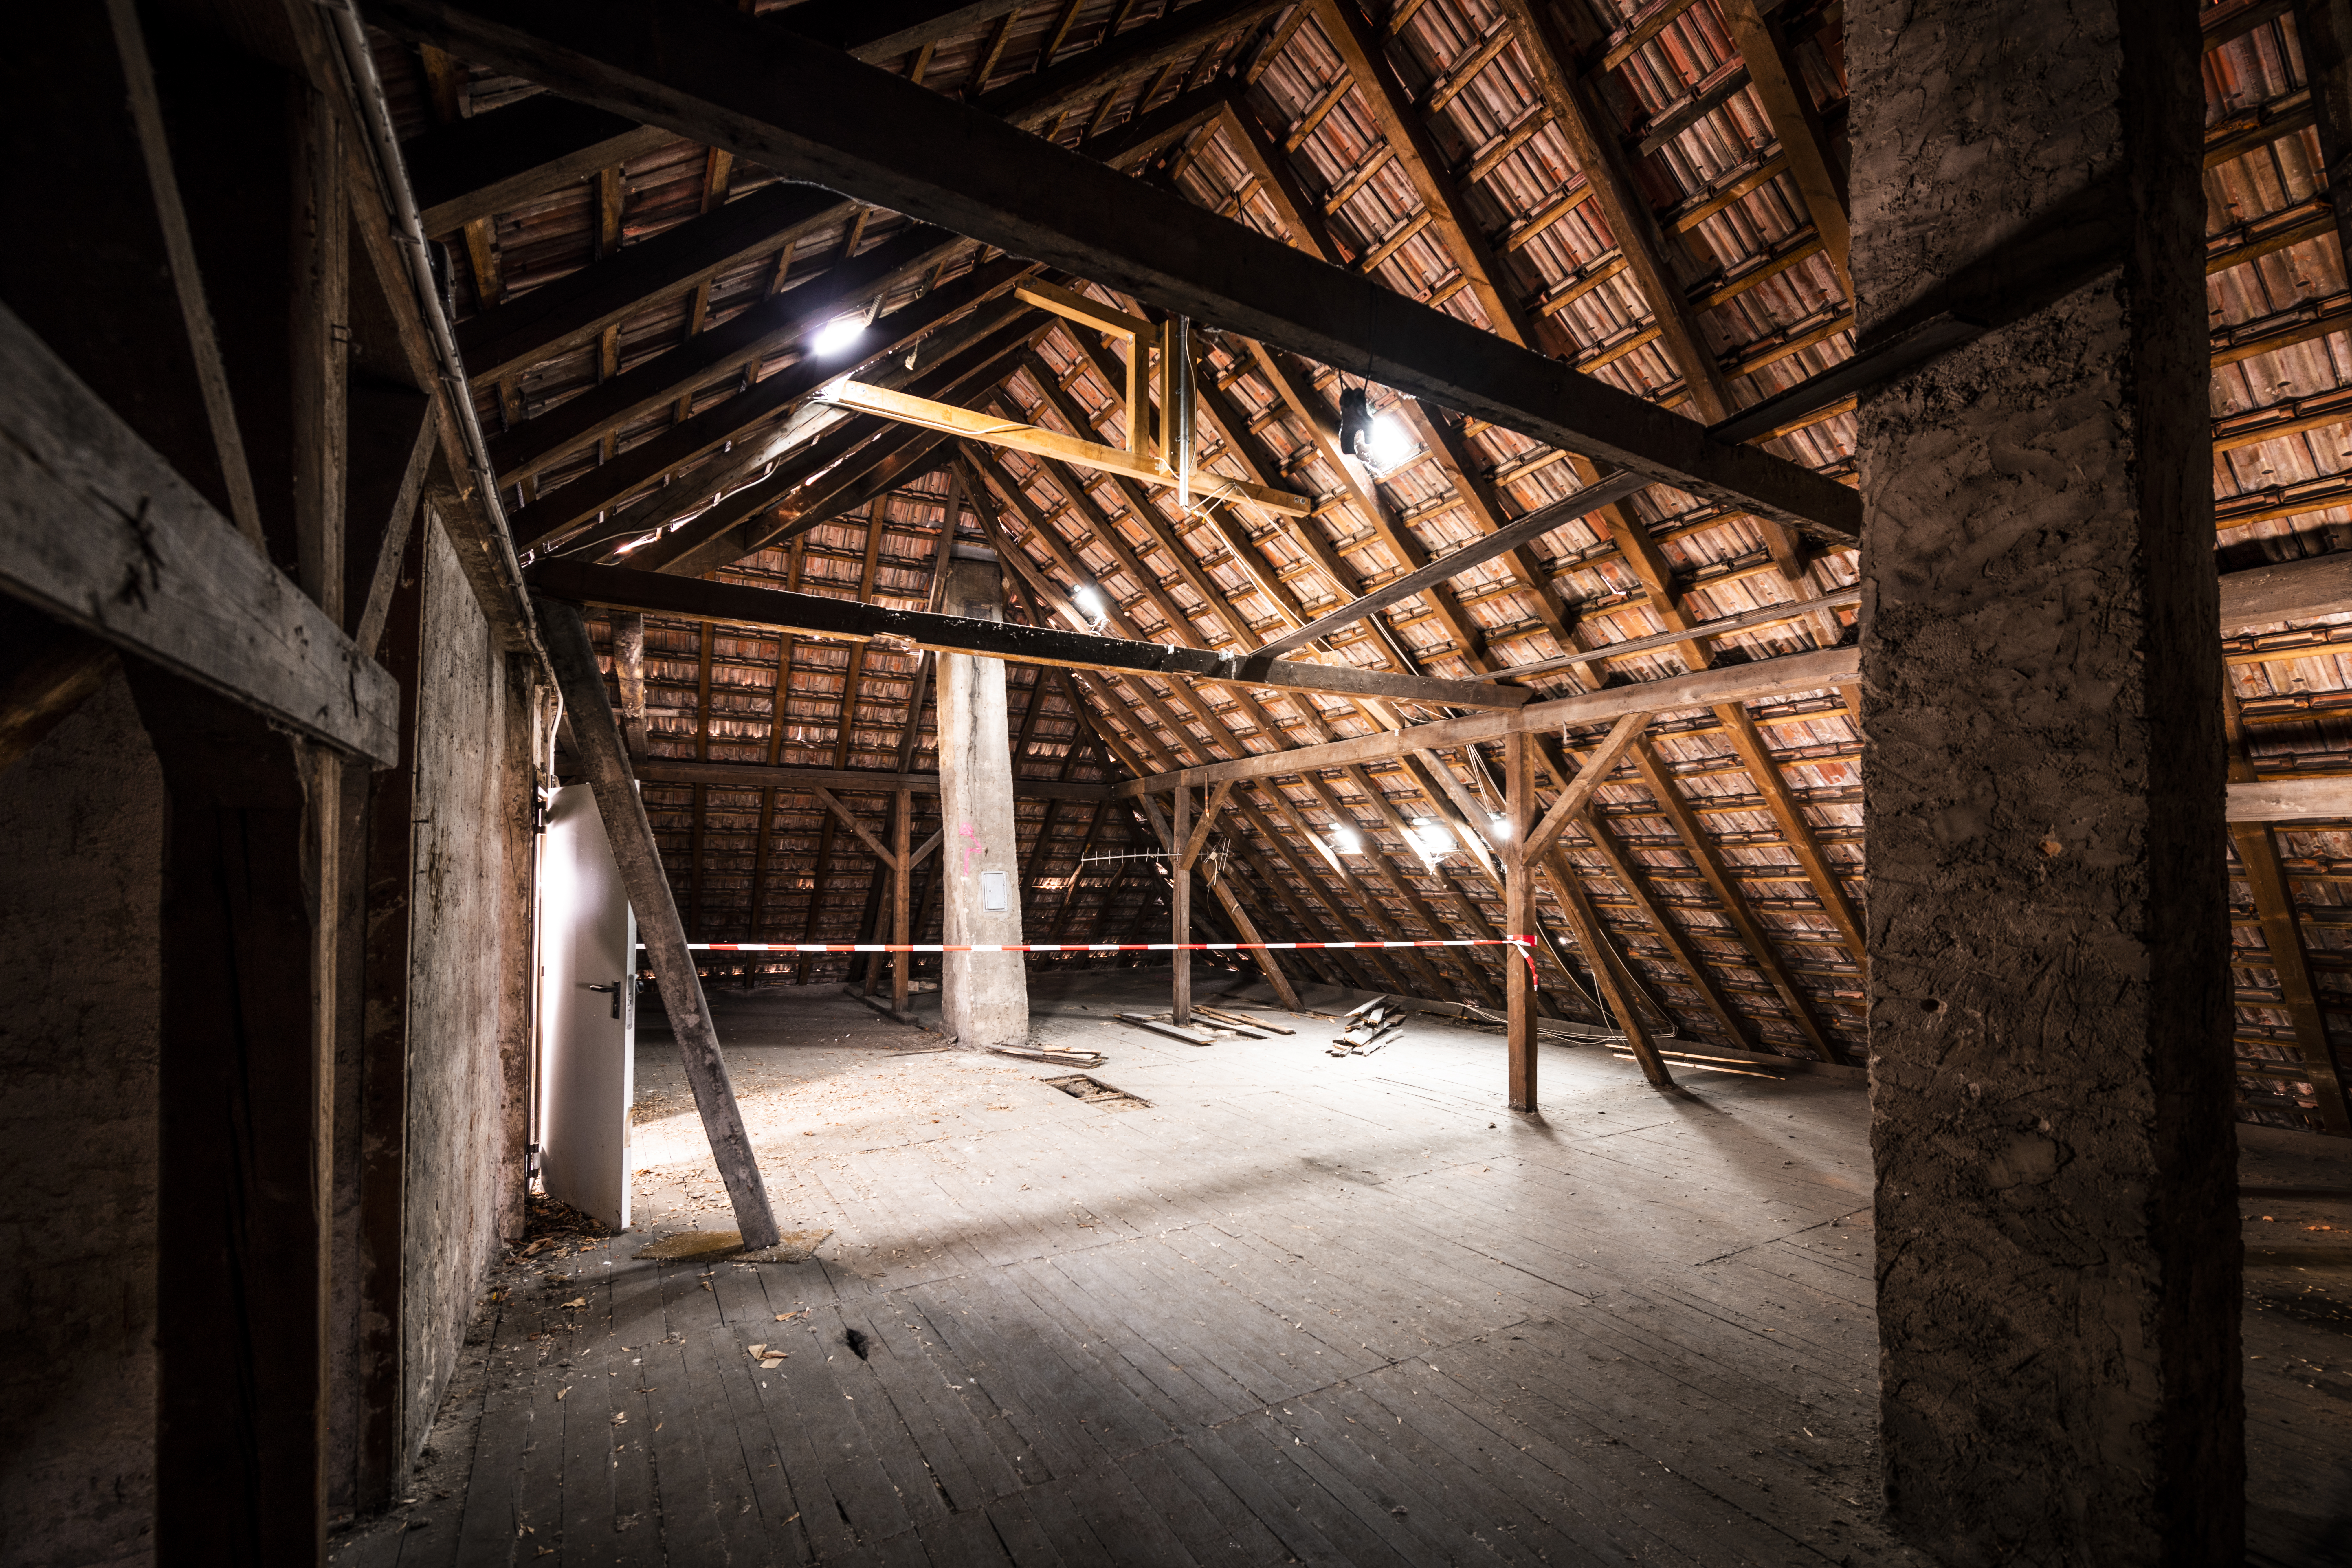 Das Bild zeigt einen Dachboden in einem alten Gebäude.